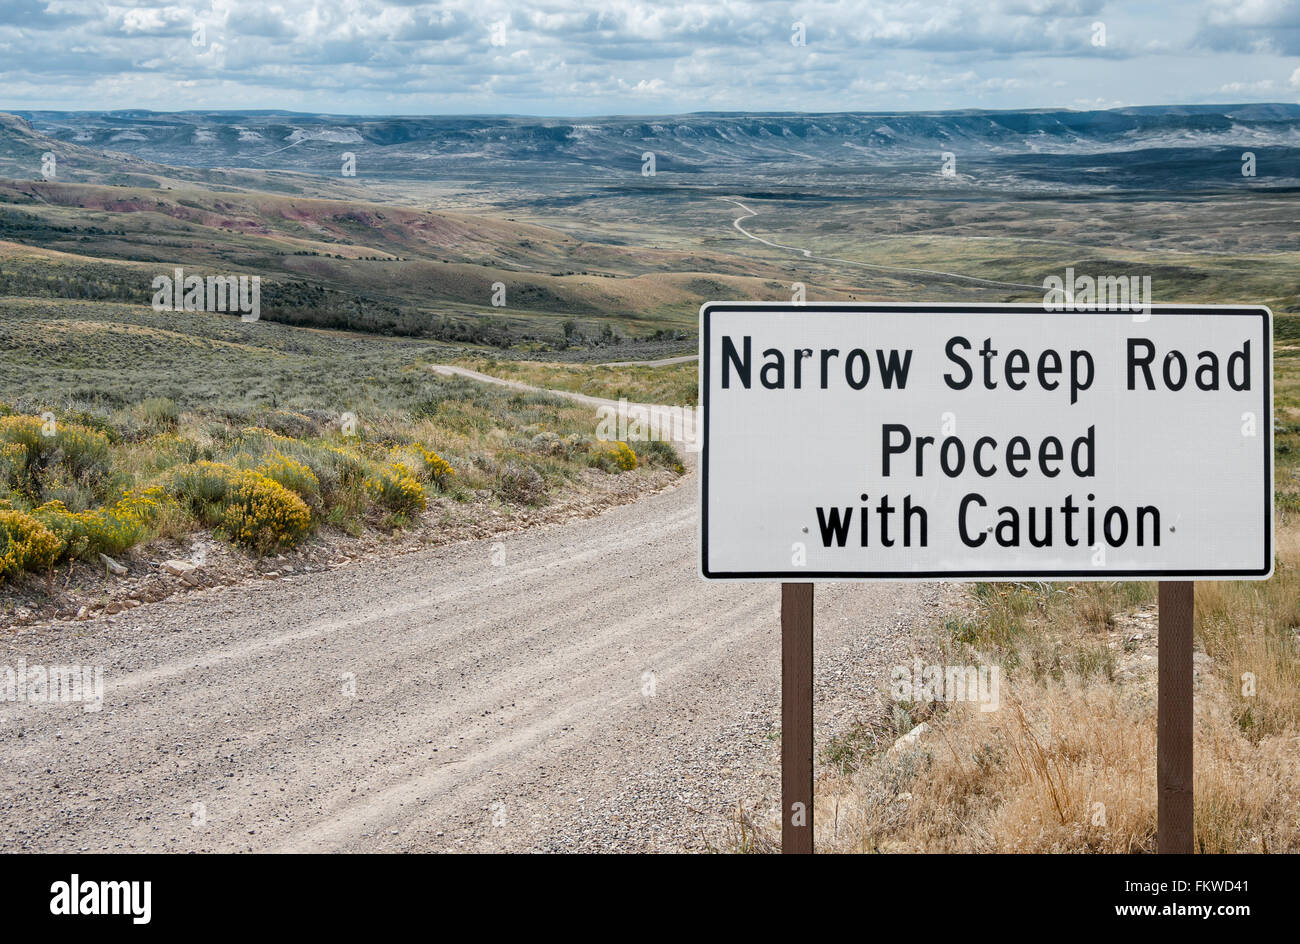 Narrow Steep Road Warning Sign Stock Photo